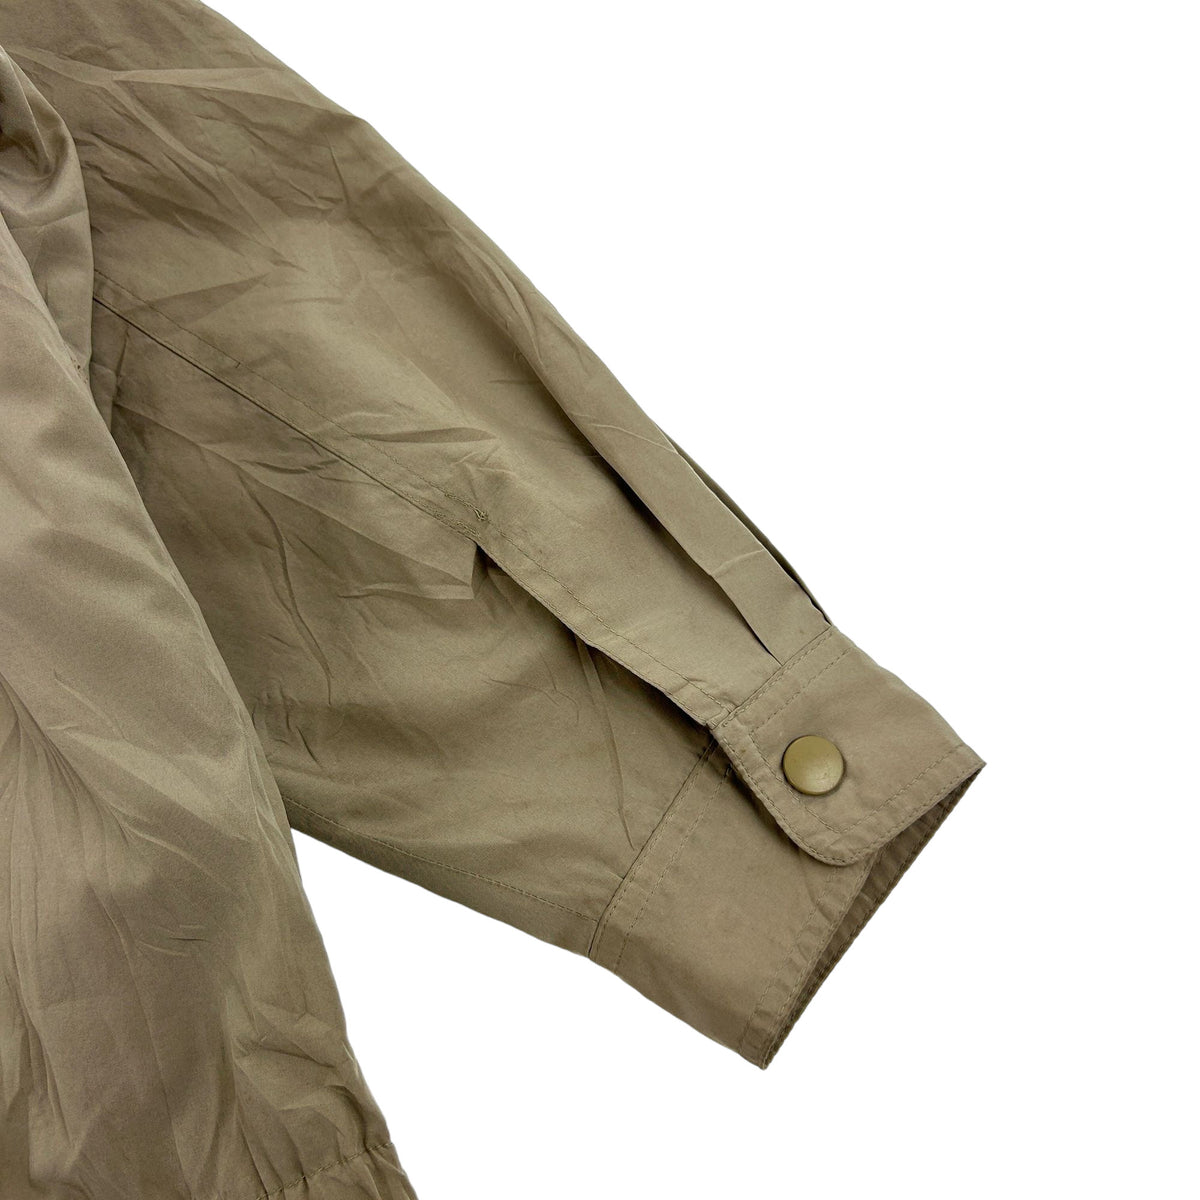 Vintage YSL Harrington Jacket Size L